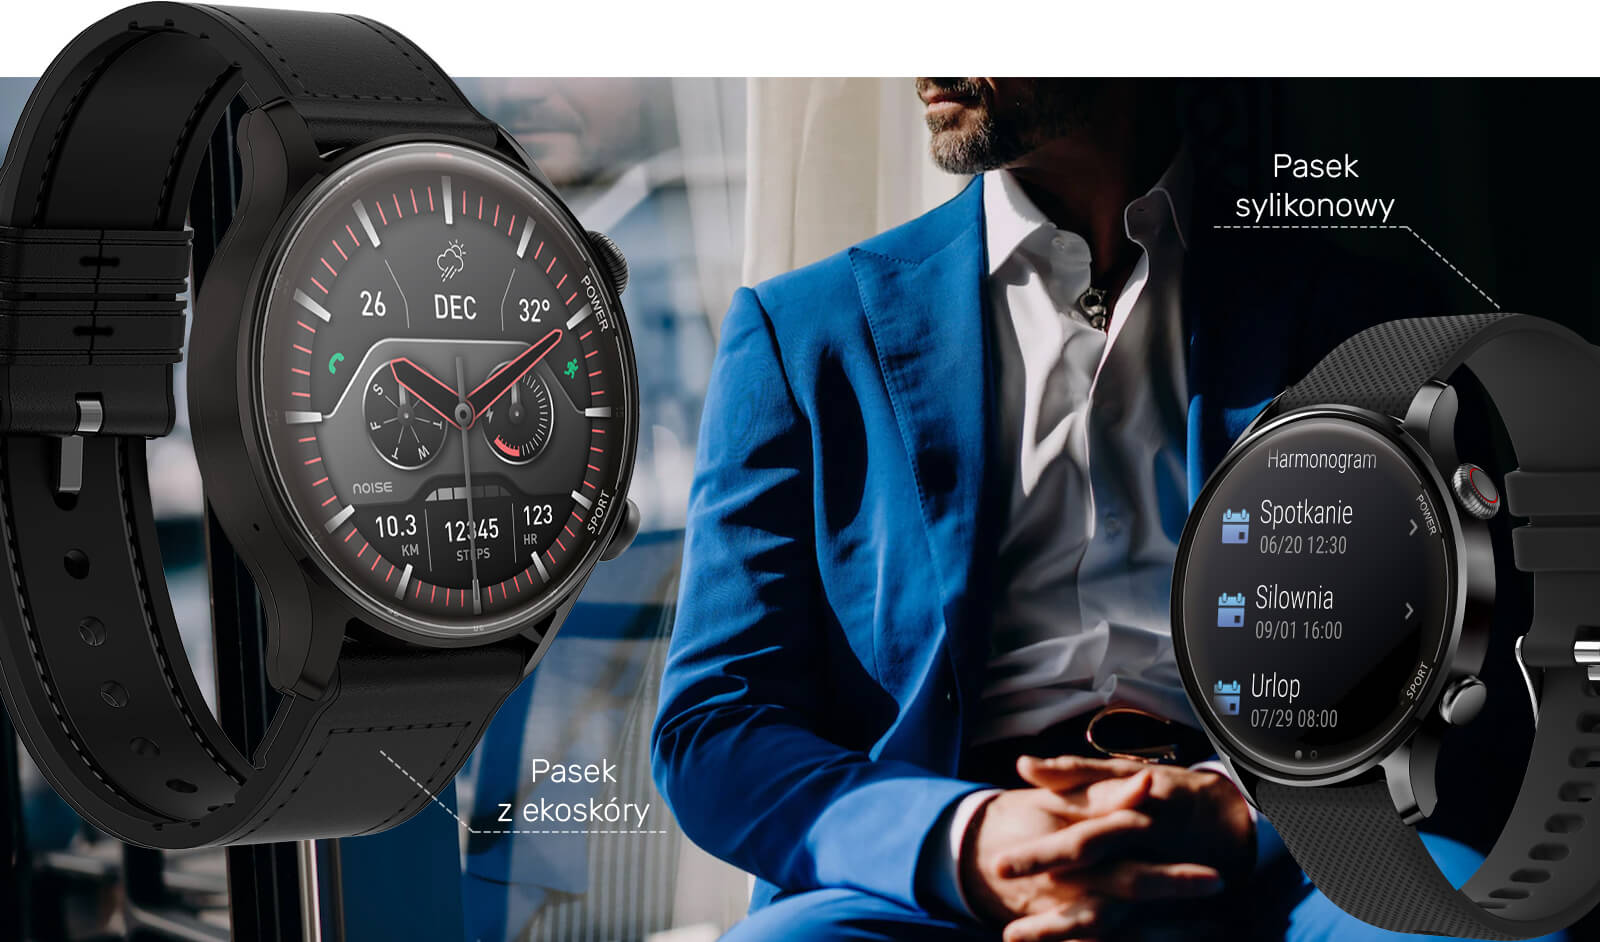 Zegarek smartwatch z wymiennymi paskami